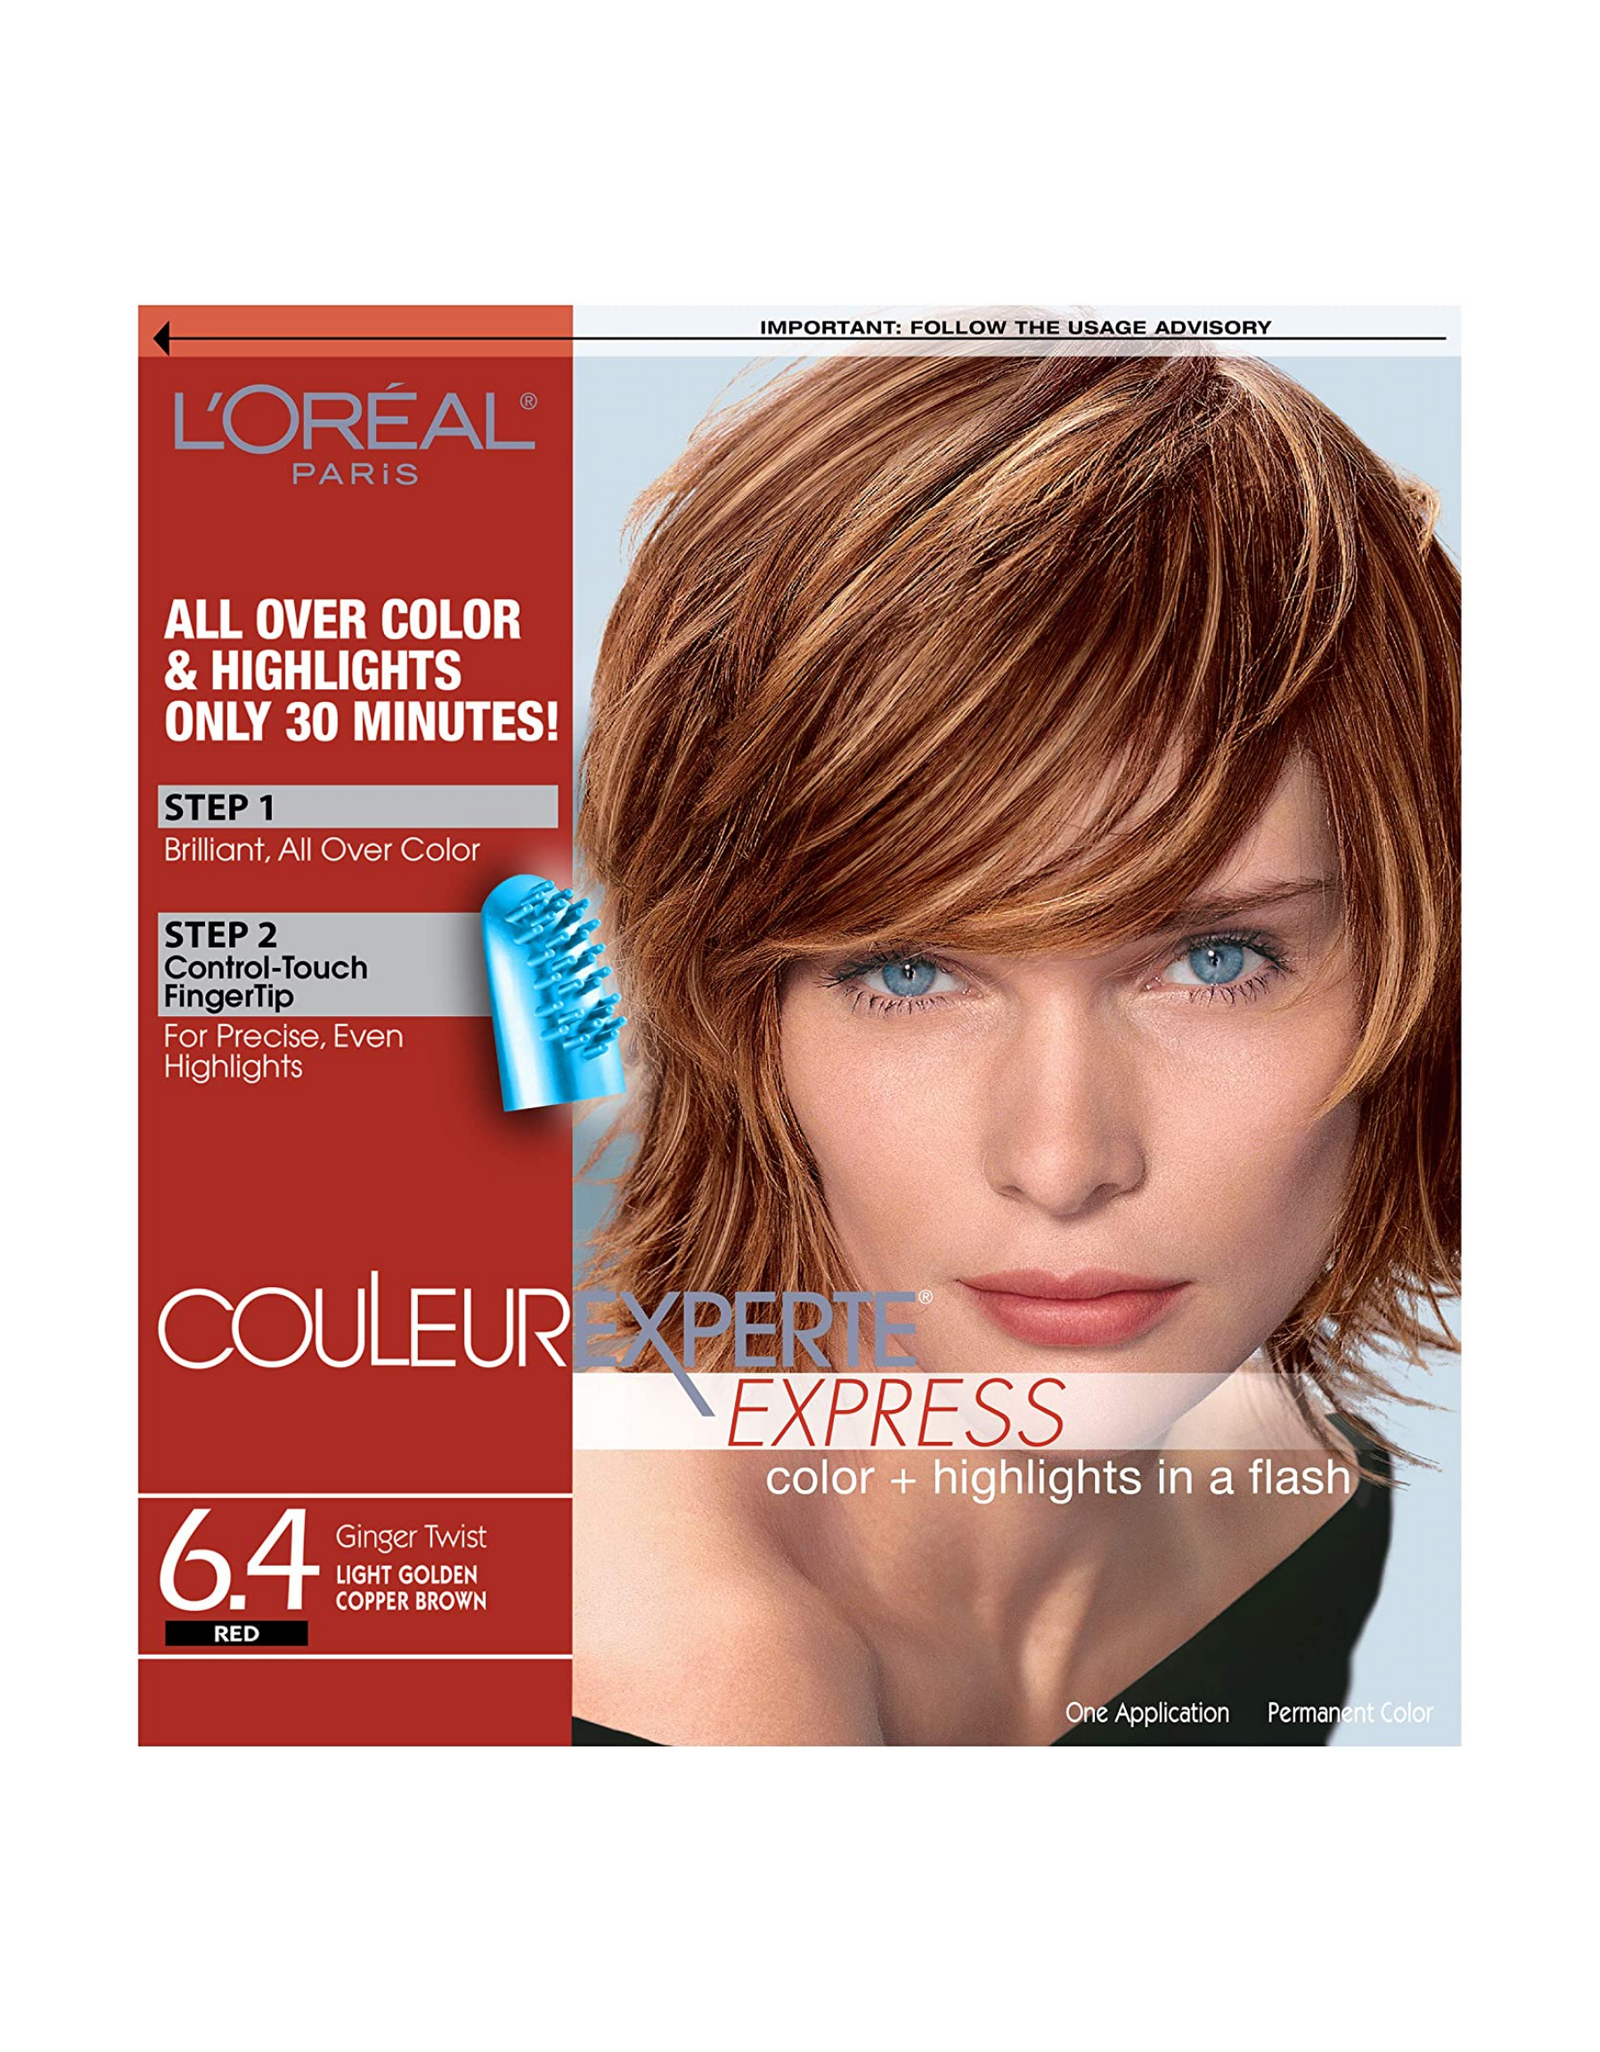 L'Oréal Paris Couleur Experte Express - Home Hair Color & Highlights Kit, Ginger Twist